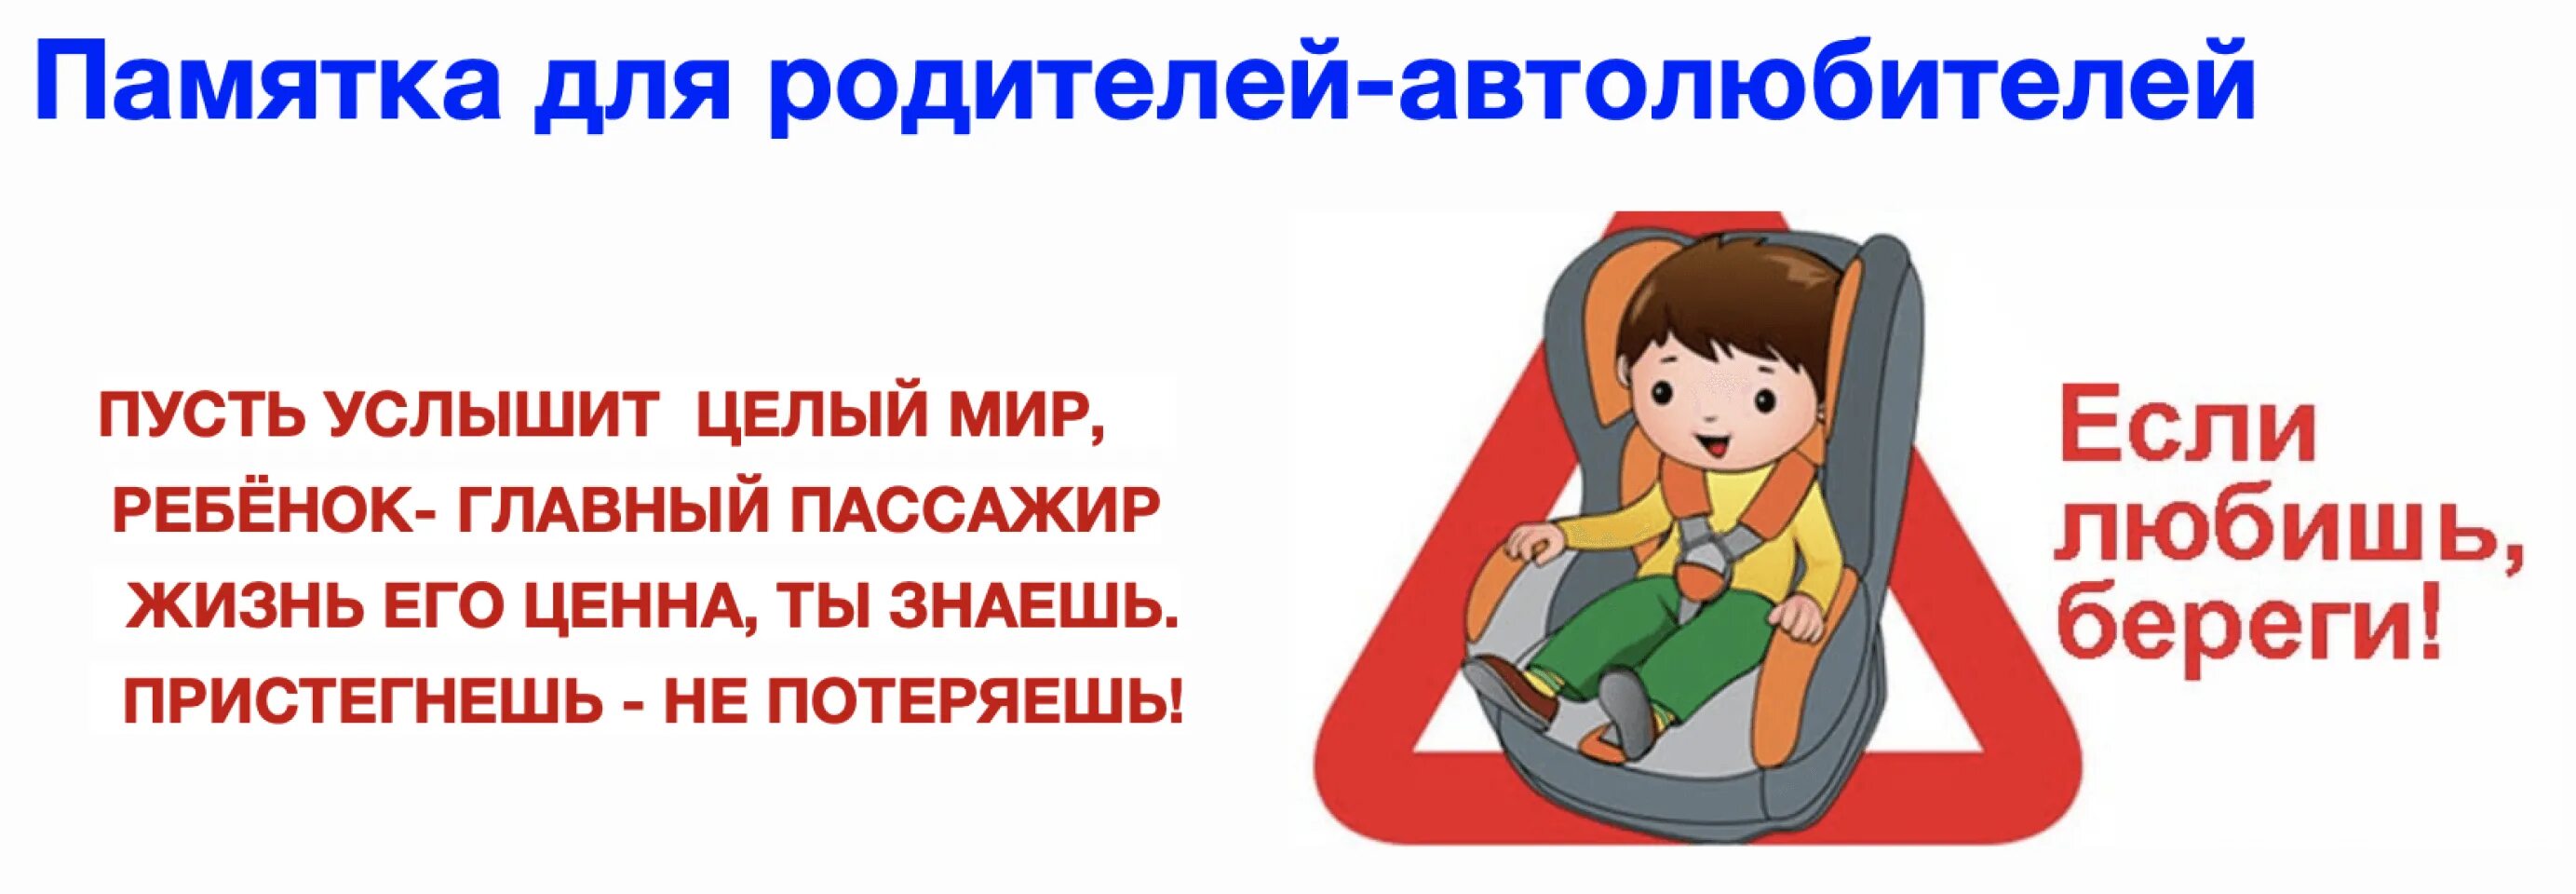 Автокресло для родителей. Ребенок главный пассажир памятка для родителей. Безопасность детей в автомобиле. Автокресло детям памятка для детей. Родители пристегните детей ремнями безопасности.